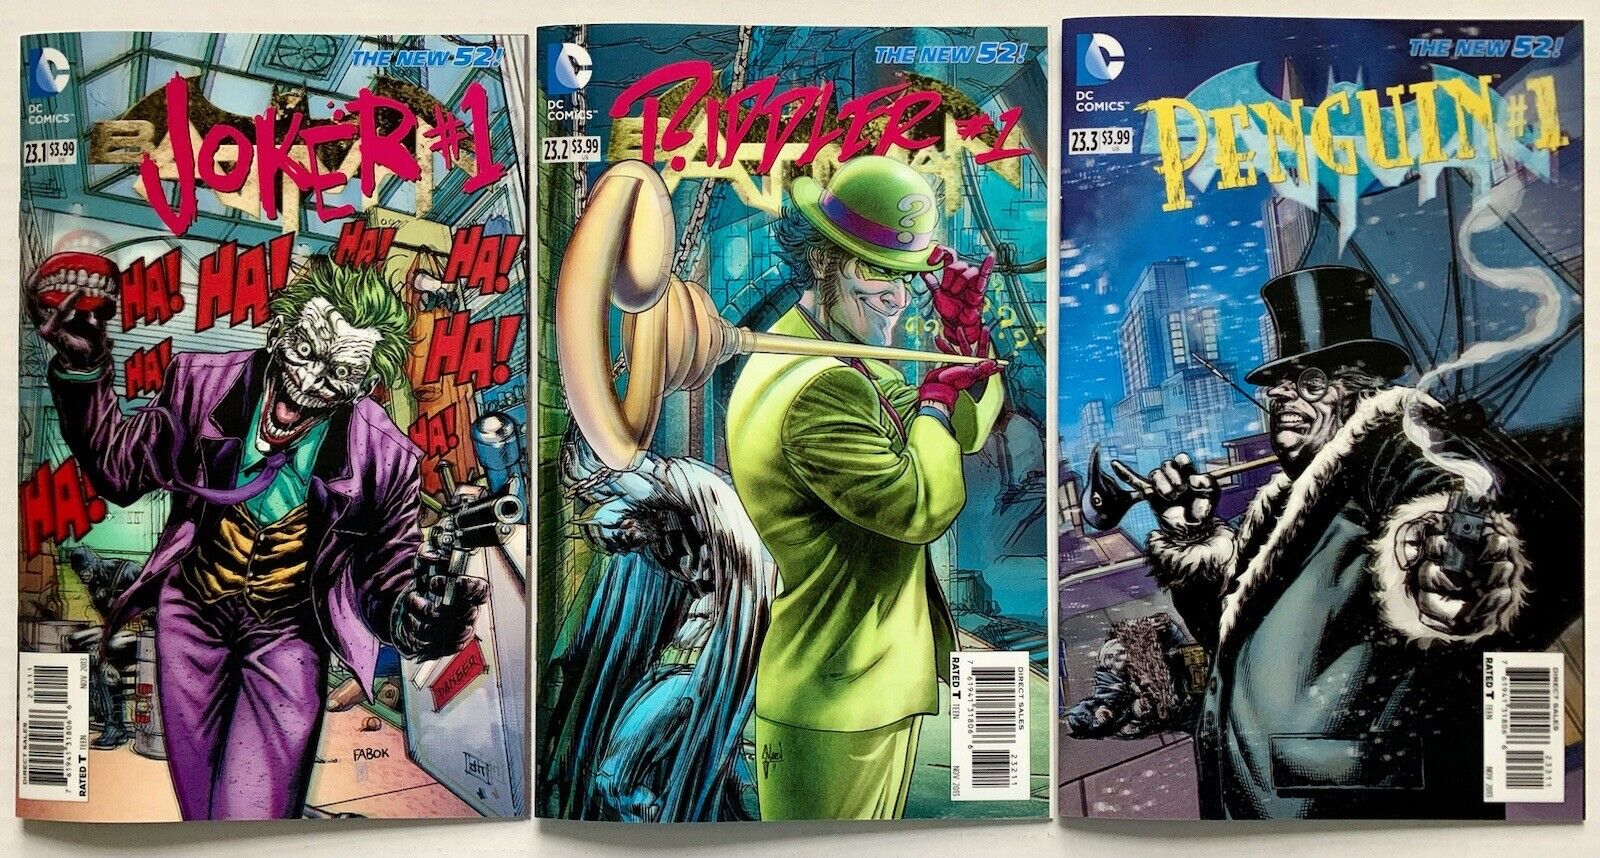 Batman #23.1 #23.2 #23.3 (2011) 3 Issues -Lenticular 3D Villains Covers (NM/9.4)